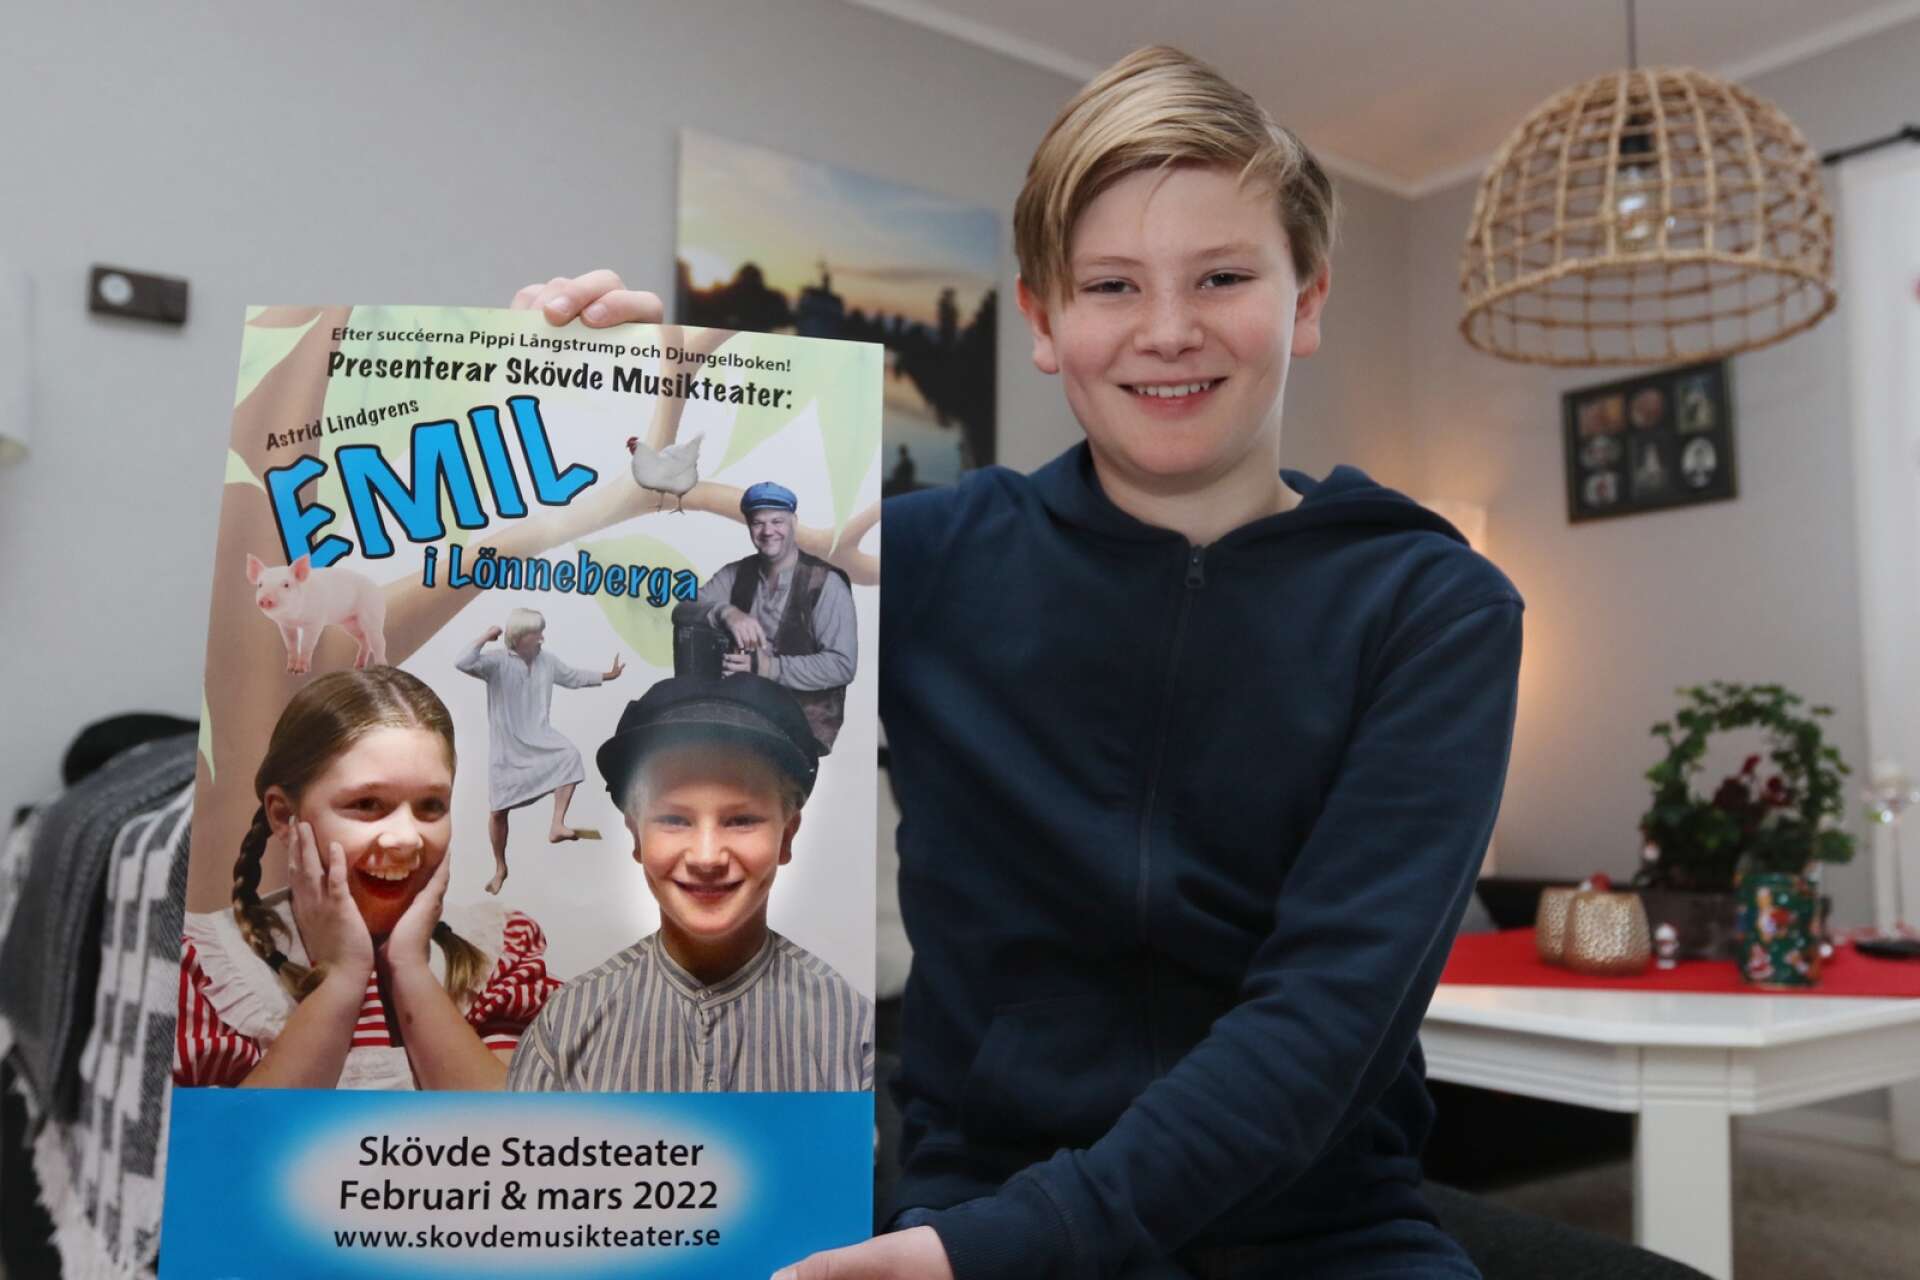 Oscar Andersson får fira sin 13-årsdag med musikalpremiär. I musikalen Emil i Lönneberga spelar han den busiga och omtyckta Astrid Lindgren-karaktären.